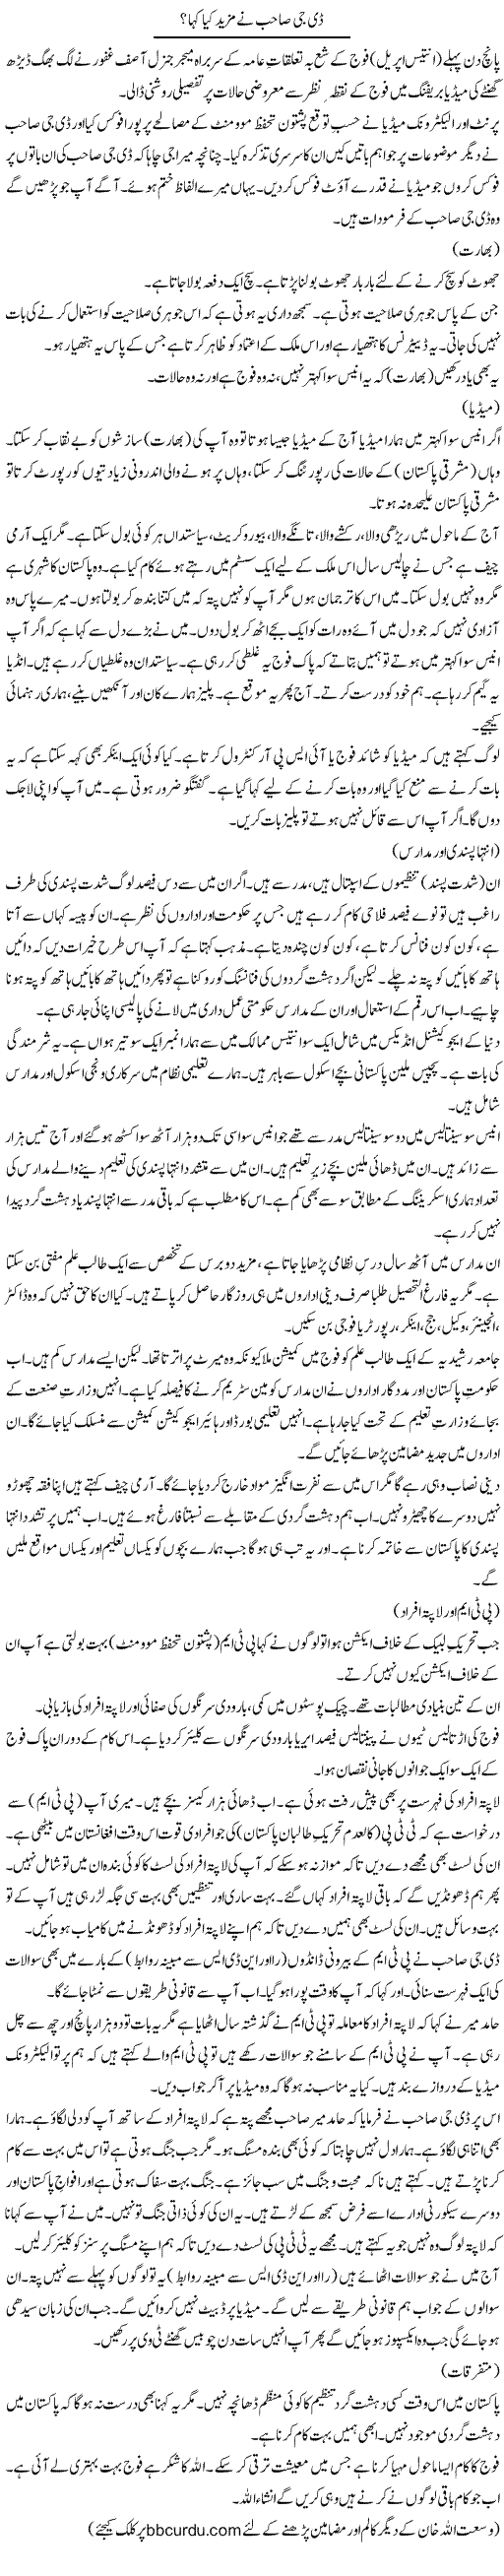 DG Sahib Ne Mazeed Kya Kaha? | Wusat Ullah Khan | Daily Urdu Columns